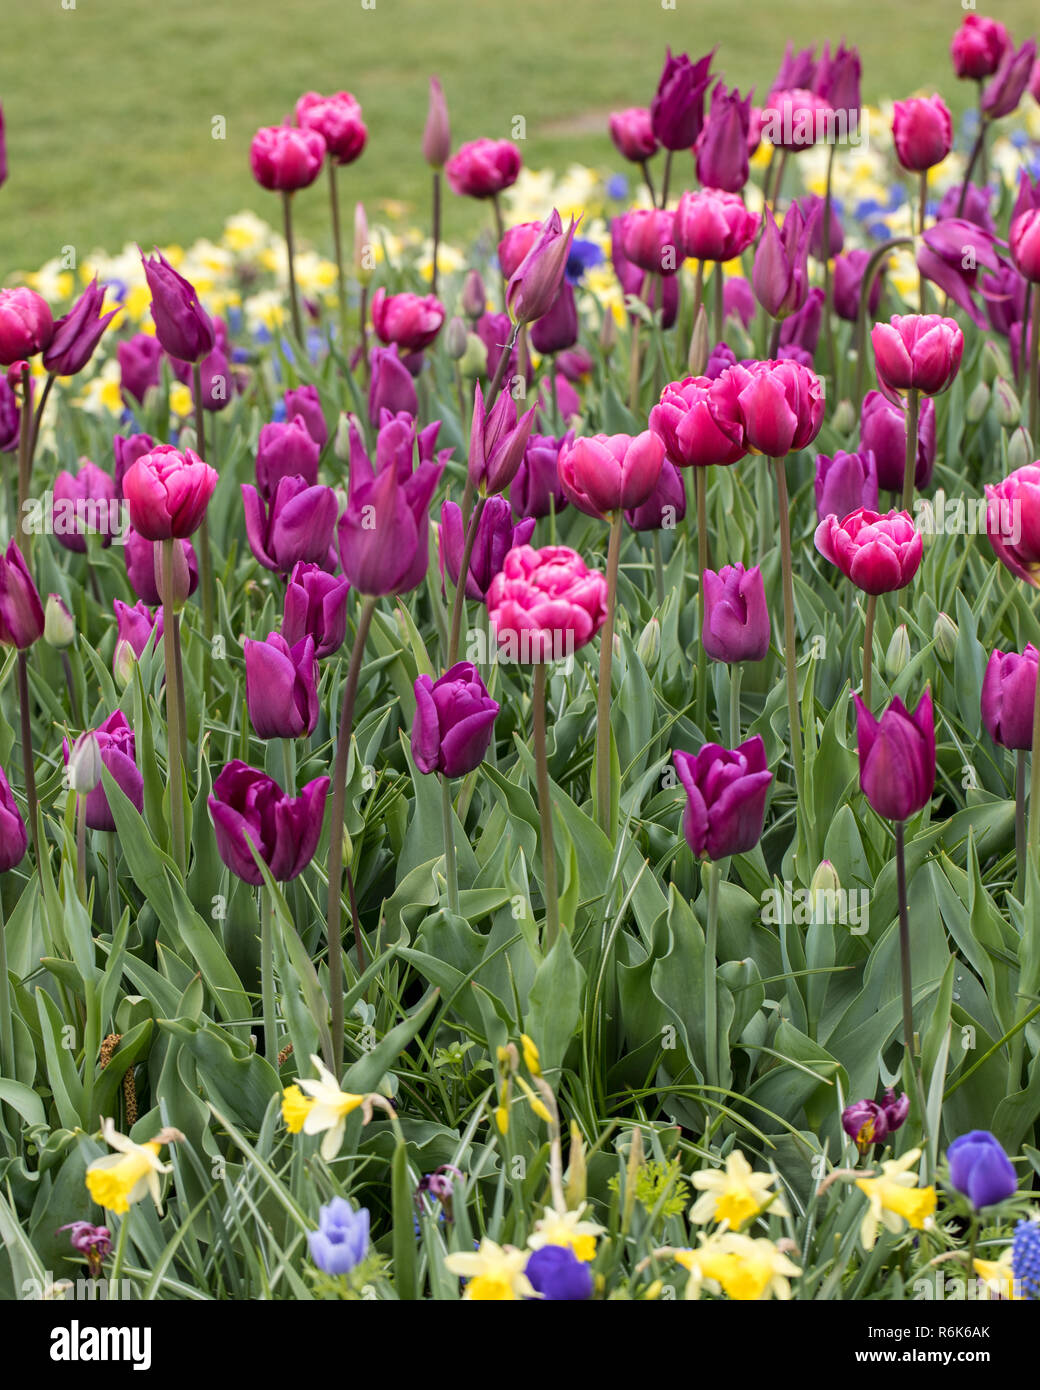 Tulipani viola fioriture dei fiori in un giardino Foto Stock